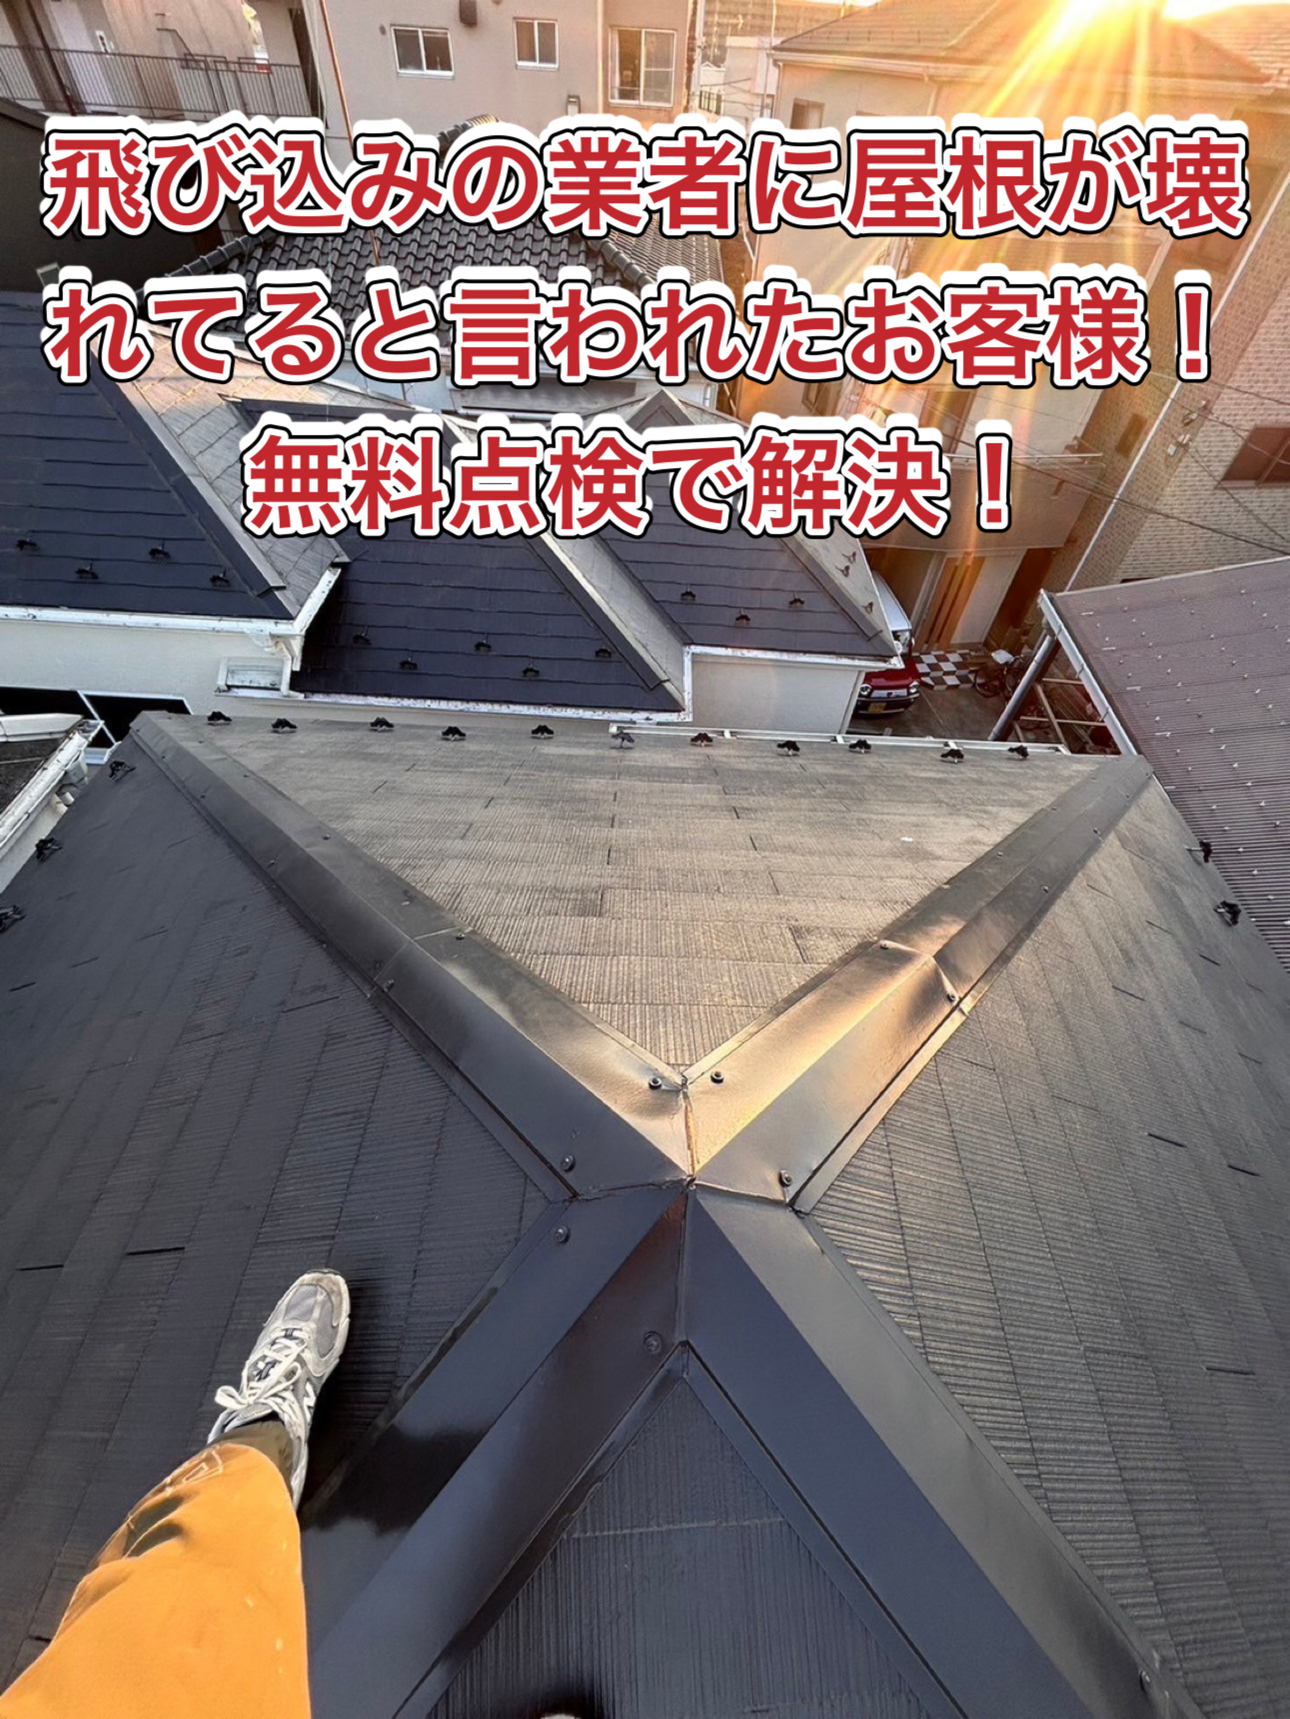 川越市で飛び込みの業者に屋根が壊れてると言われ不安になり、屋根の点検のご依頼！